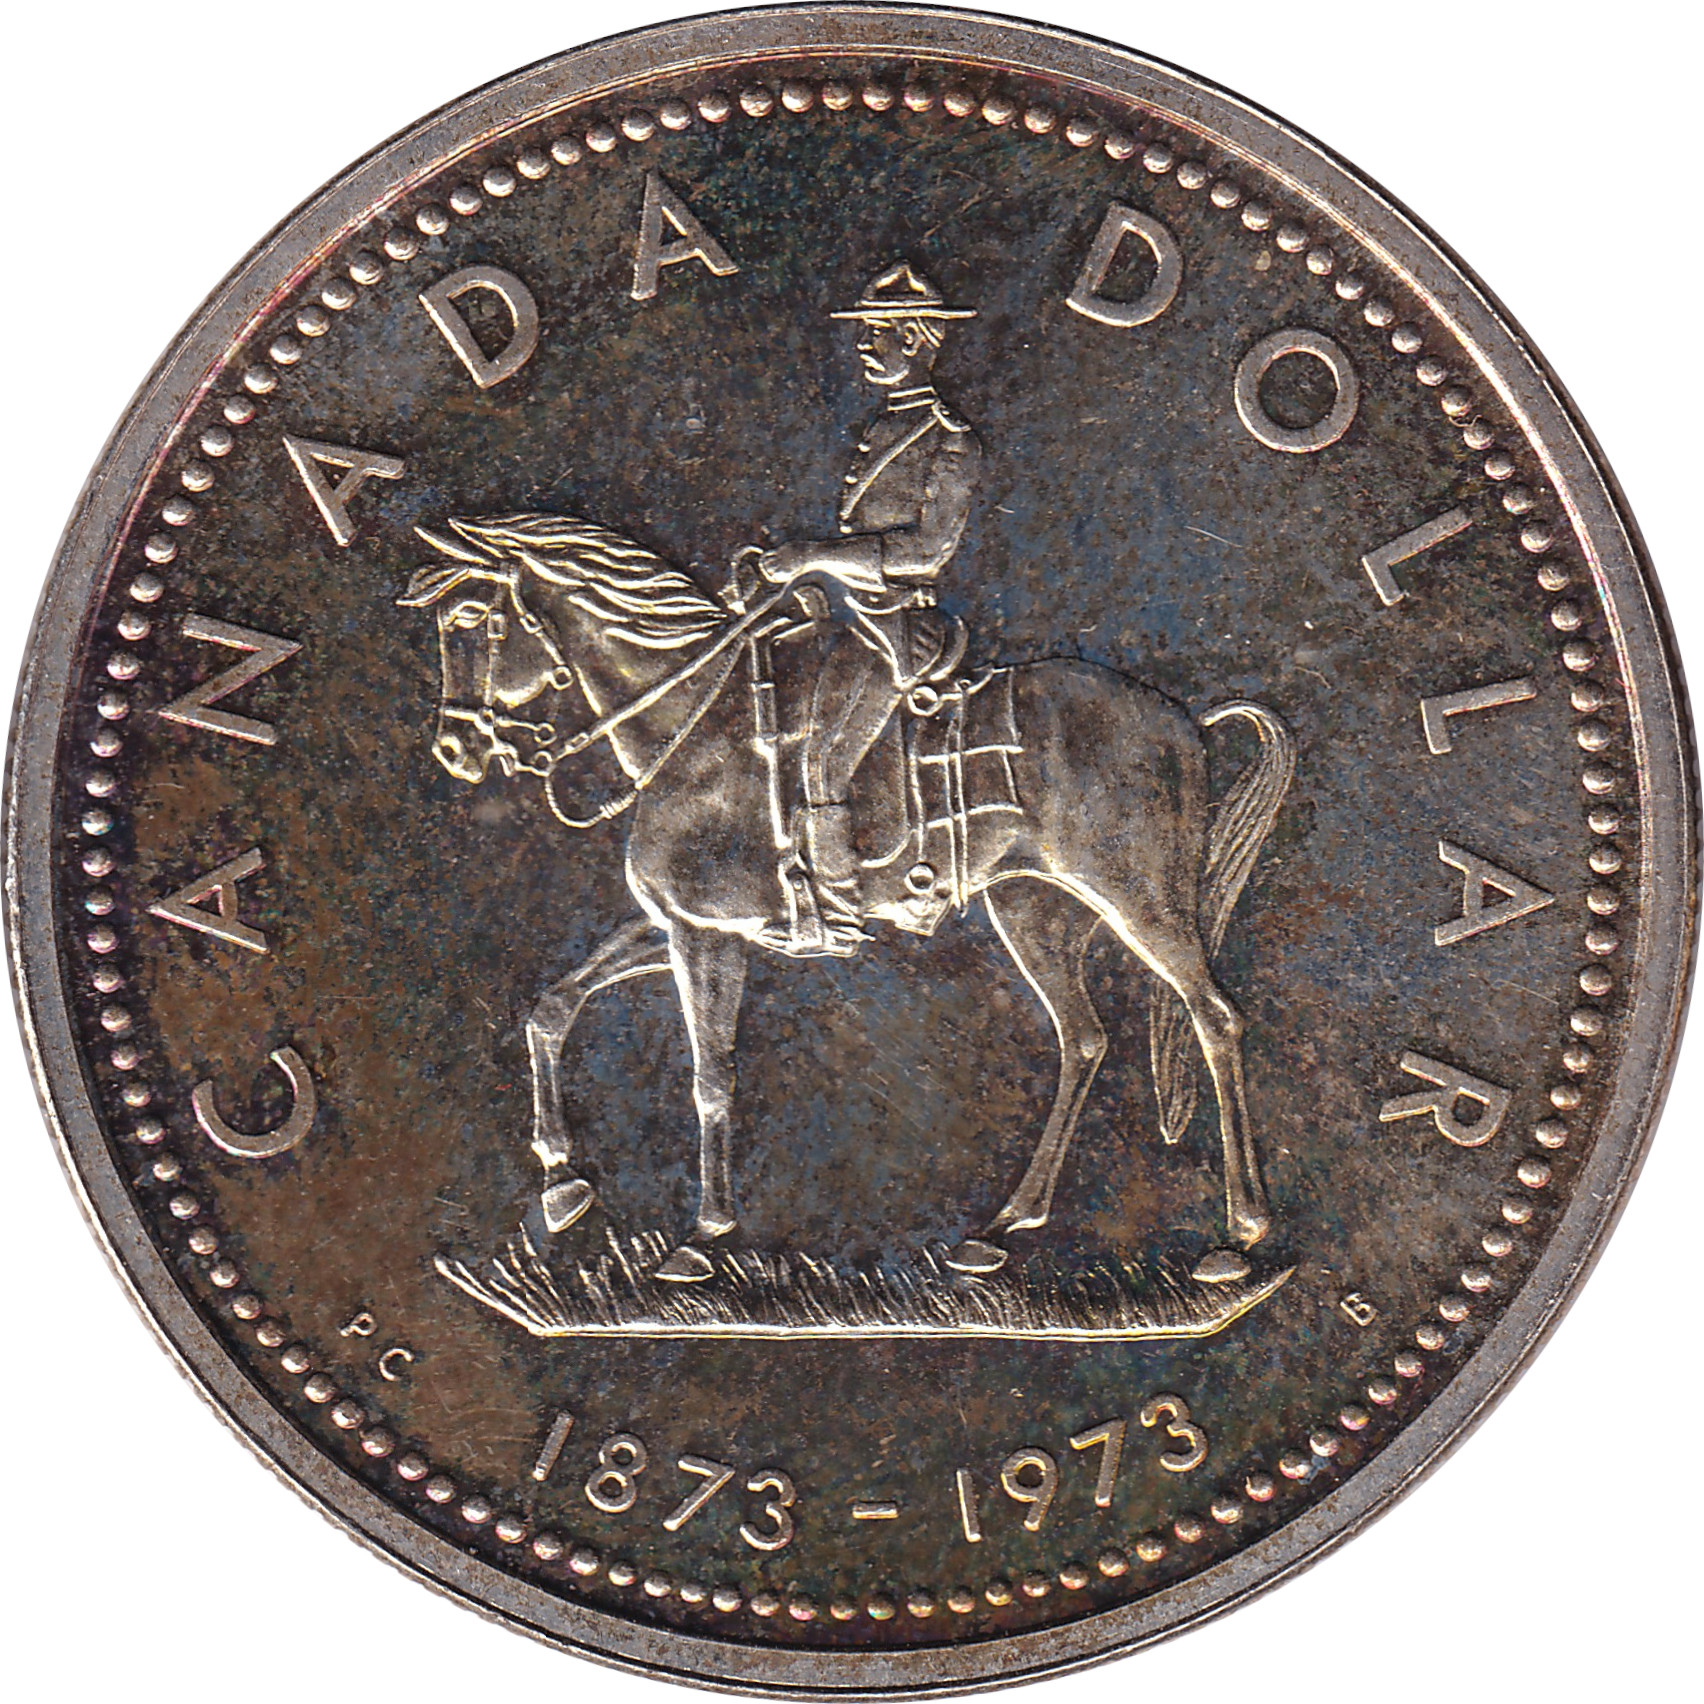 1 dollar - Royal Canadian Gendarmery